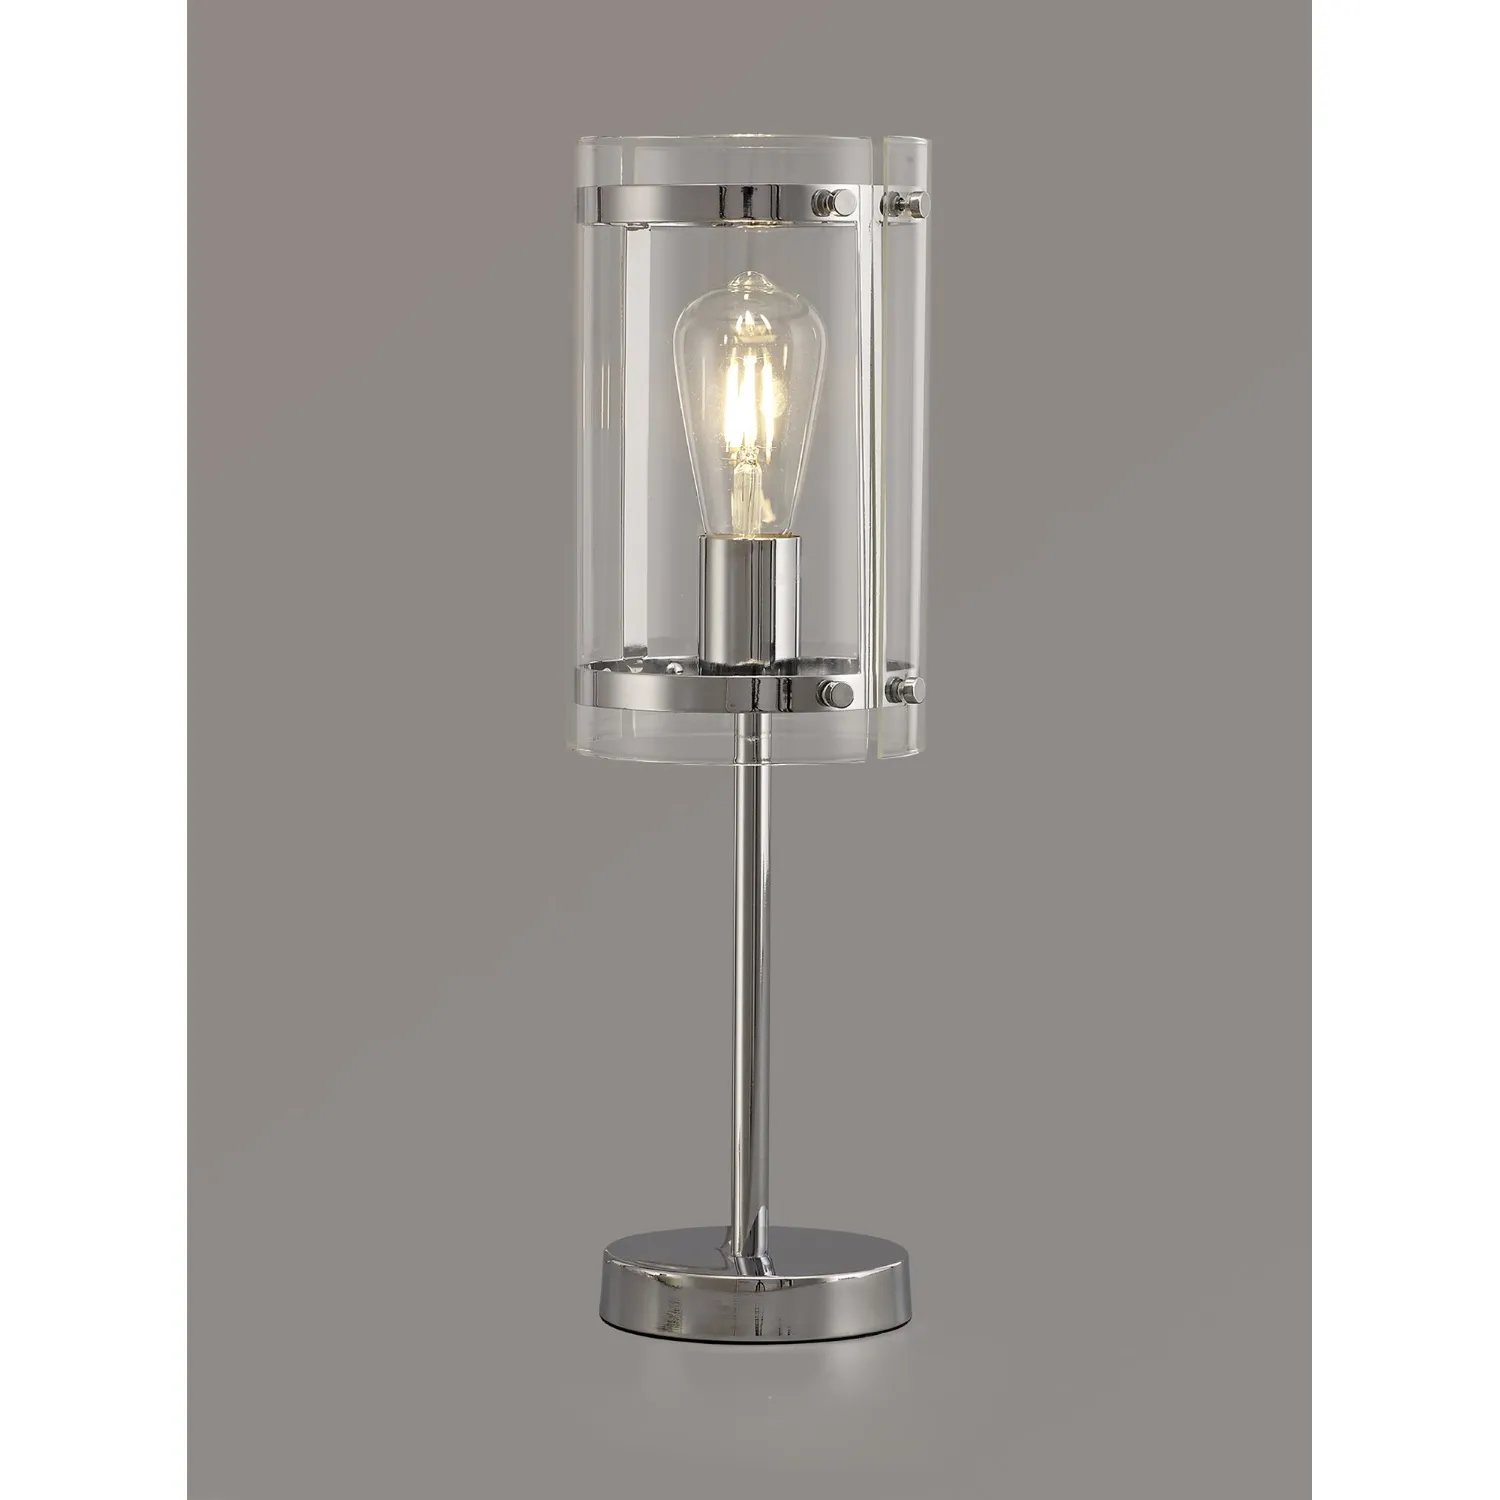 Midhurst Table Lamp, 1 Light E27, Polished Chrome